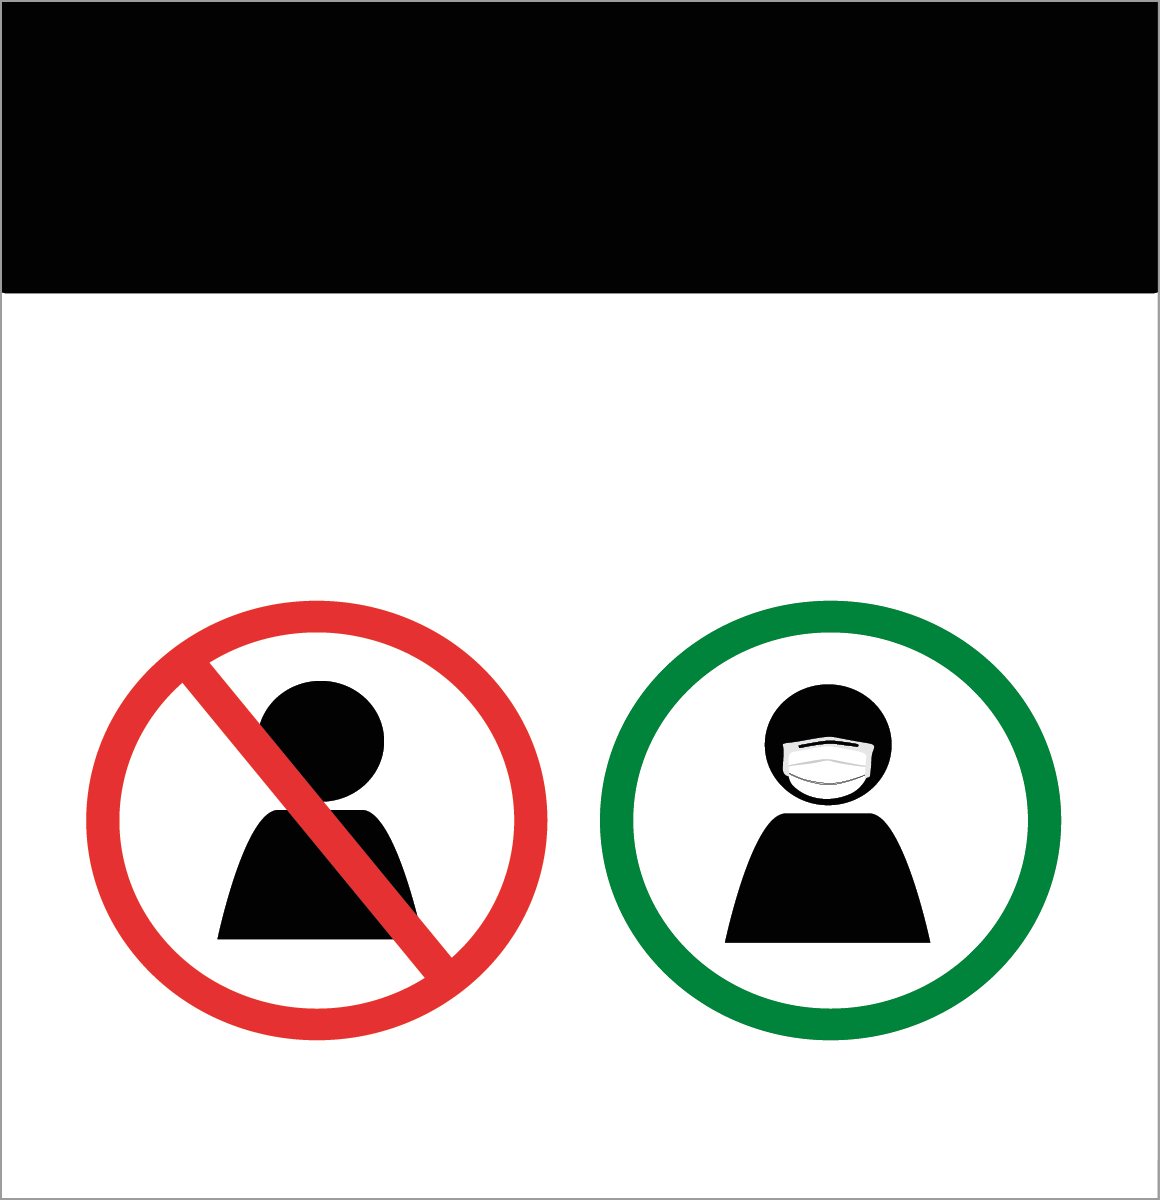 Reprodução de placa. À esquerda, círculo em vermelho com faixa transversal na diagonal sobre uma silhueta de pessoa em preto. À direita, círculo em verde com uma silhueta dentro de uma pessoa de cabelos escuros e roupa escura.